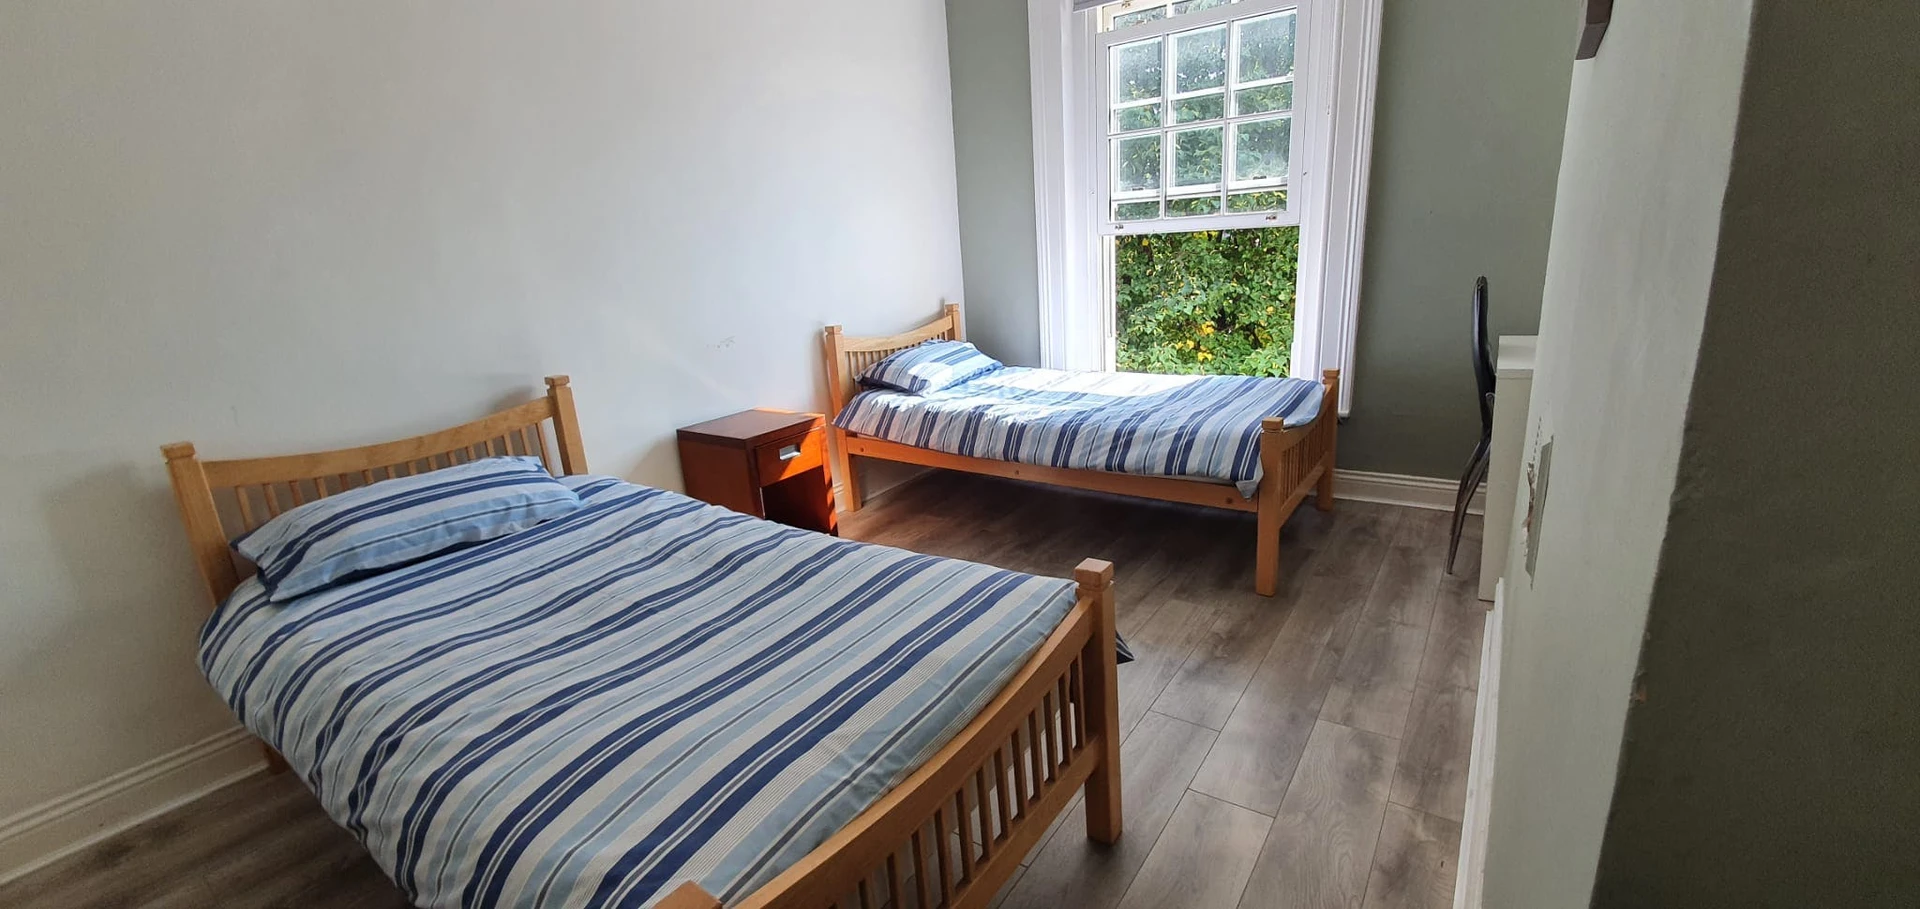 Shared room in 3-bedroom flat dublin